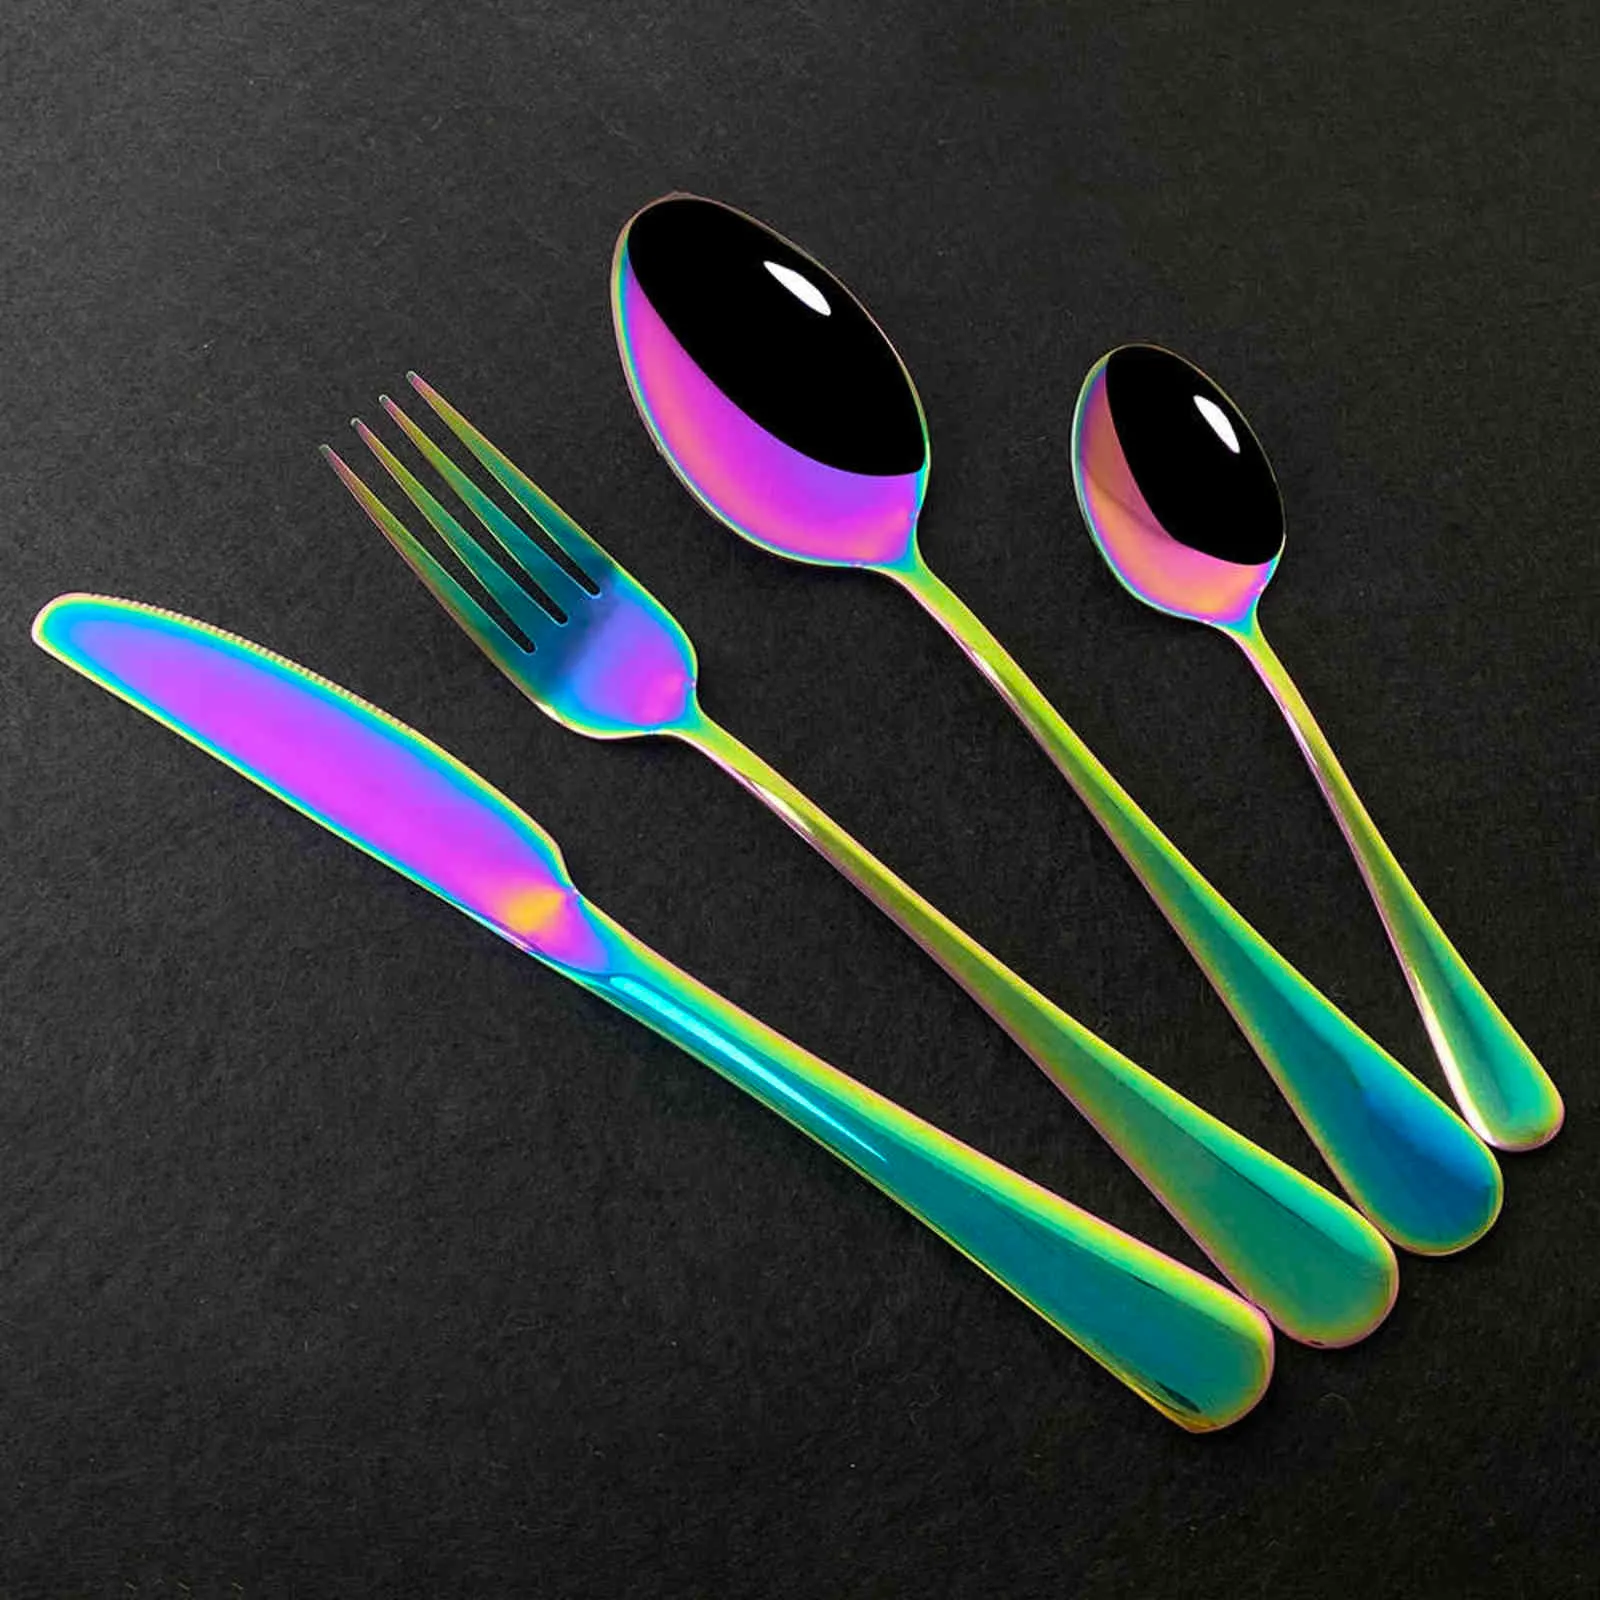 Black Mirror Dinnerware Set Stainless Steel Cutlery Fork Knife Spoon Tableware Flatware Silverware Gift Box 211112